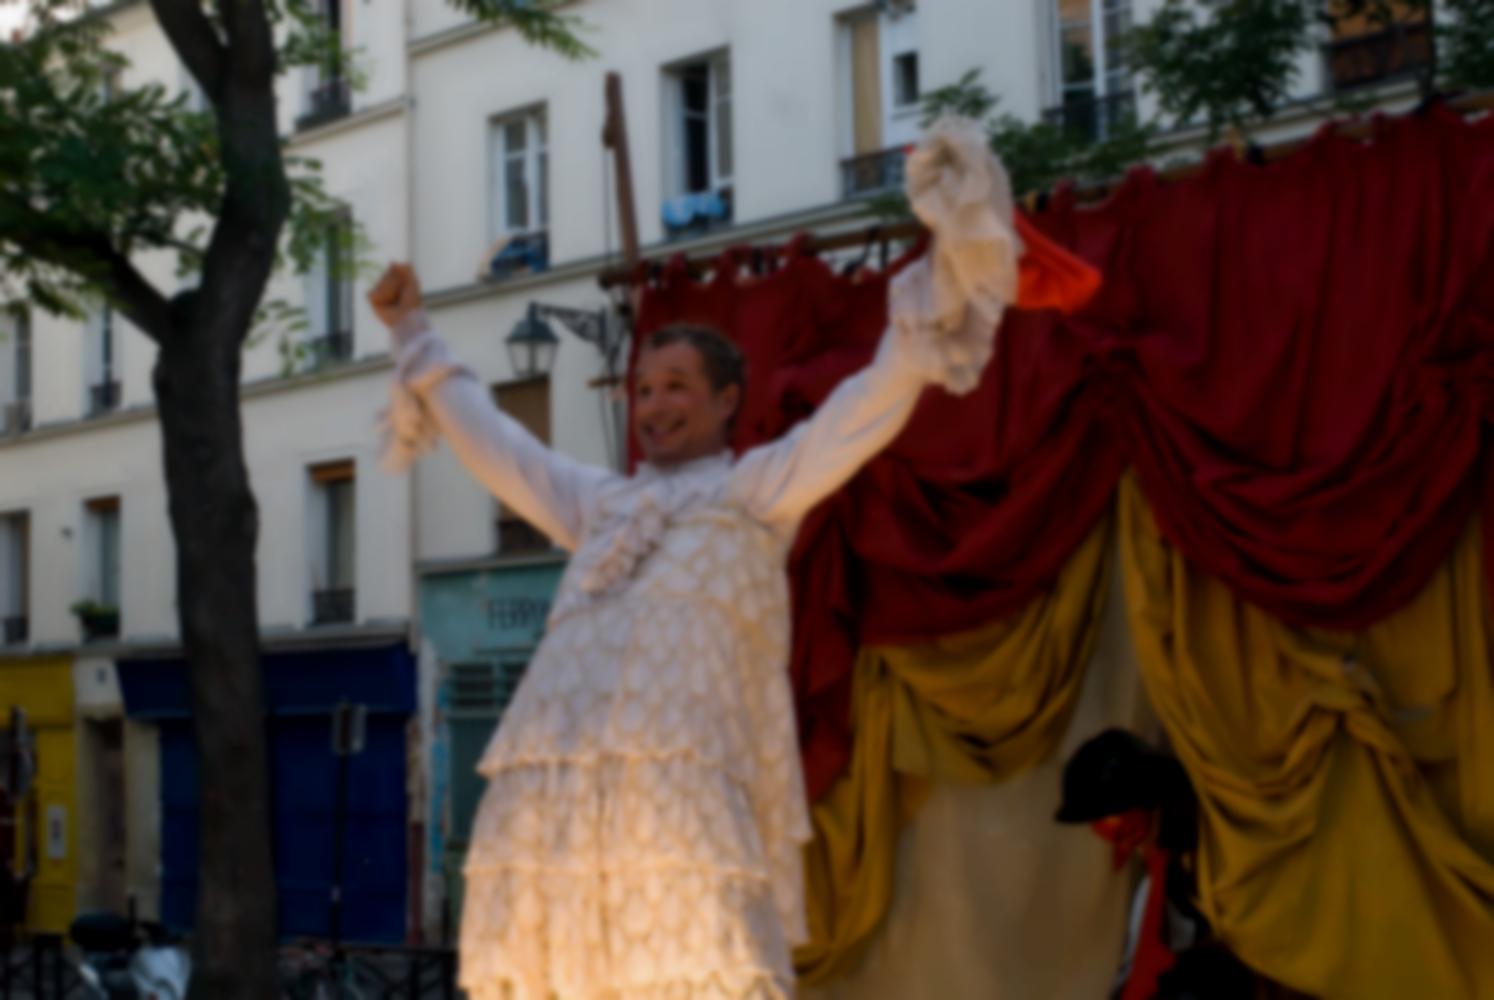 L'homme travesti vient d'ôter sa coiffure de femme et exulte, tandis qu'un autre personnage entre en scène. Paris, août 2010.